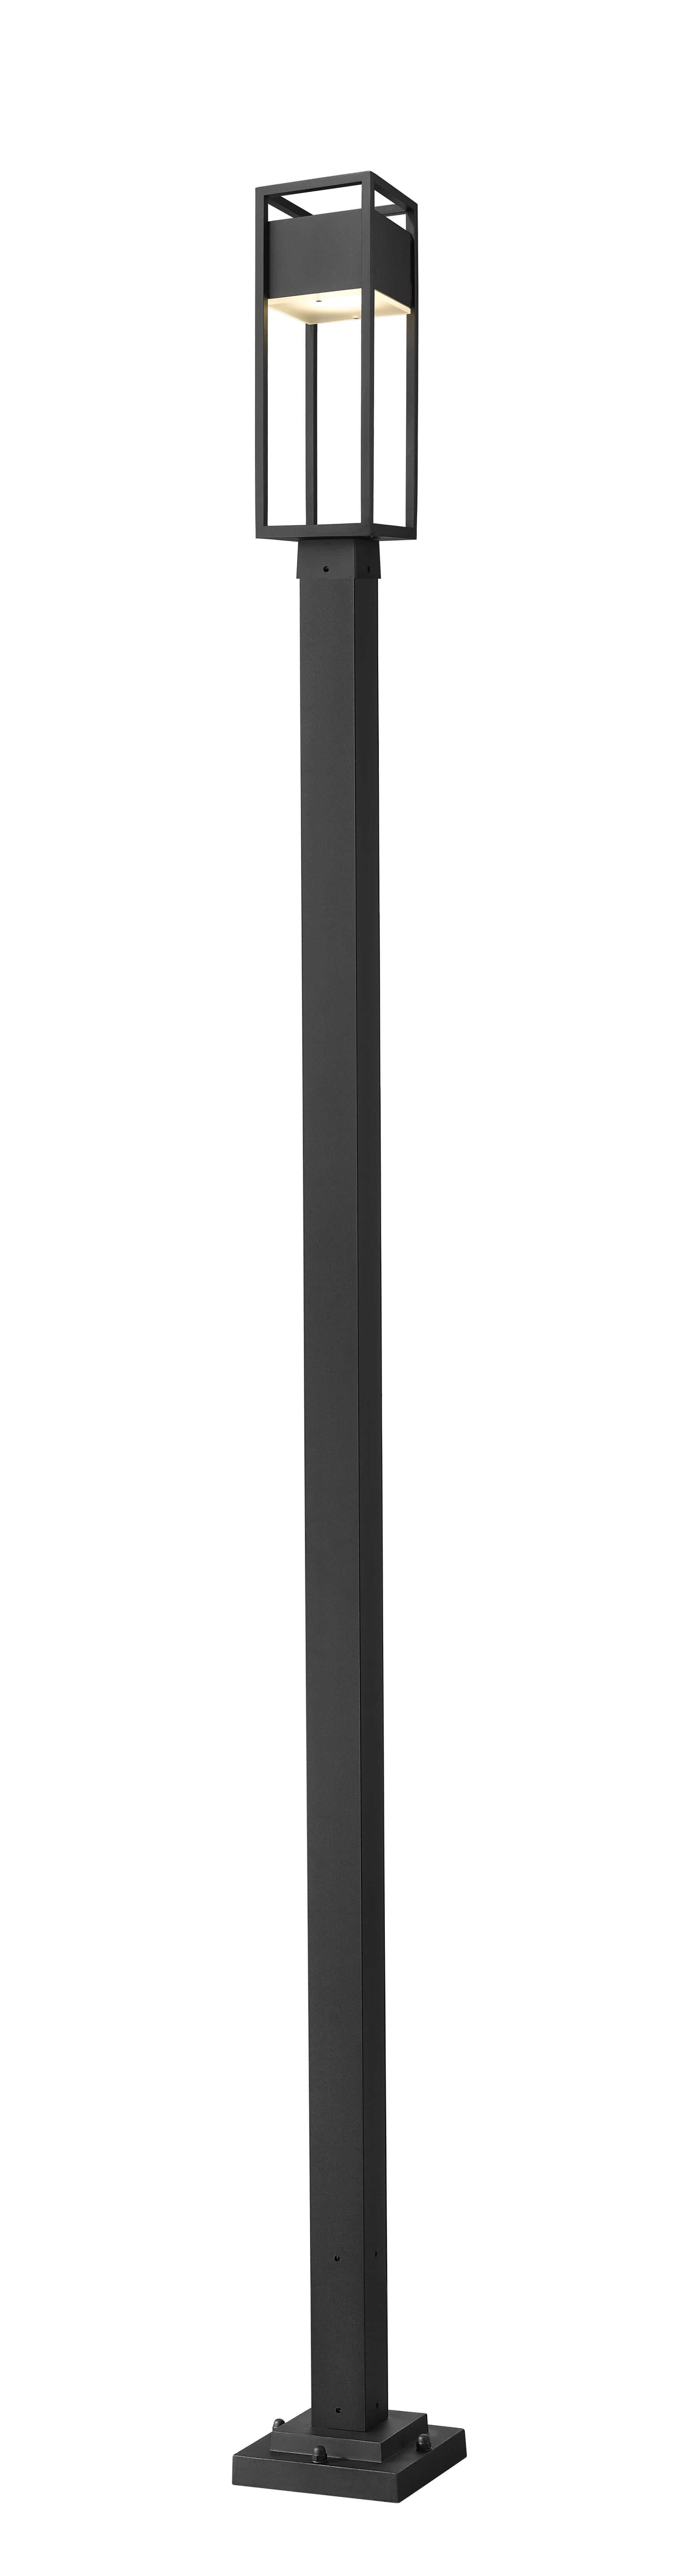 Barwick 1-Light Outdoor Post Mounted Fixture Light In Black